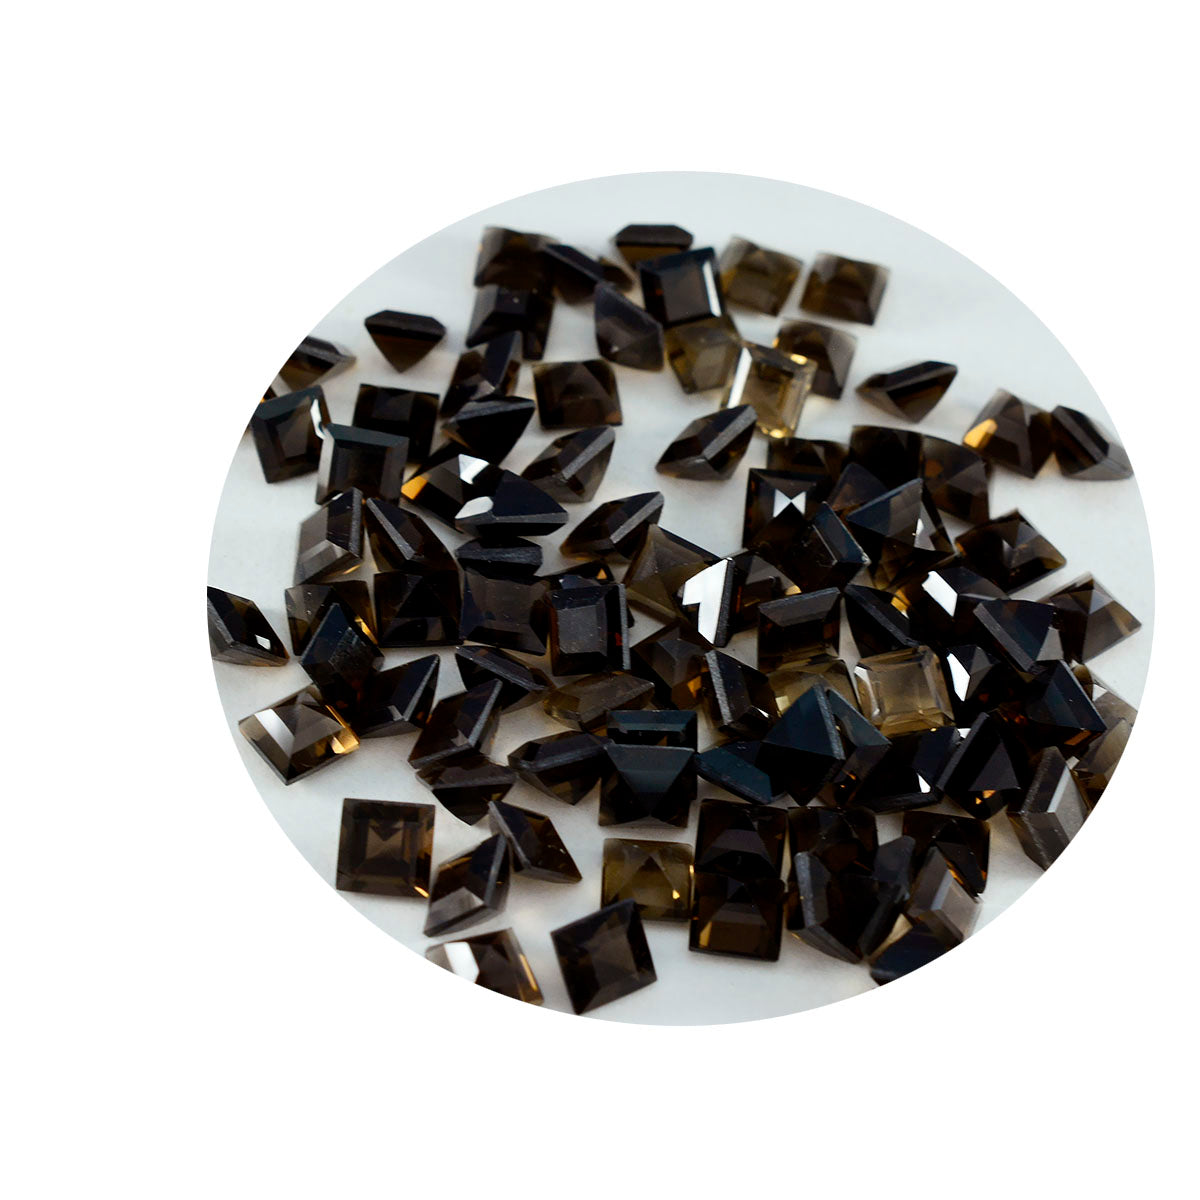 Riyogems 1PC echt bruin rookkwarts gefacetteerd 5X5 mm vierkante vorm geweldige kwaliteit edelsteen